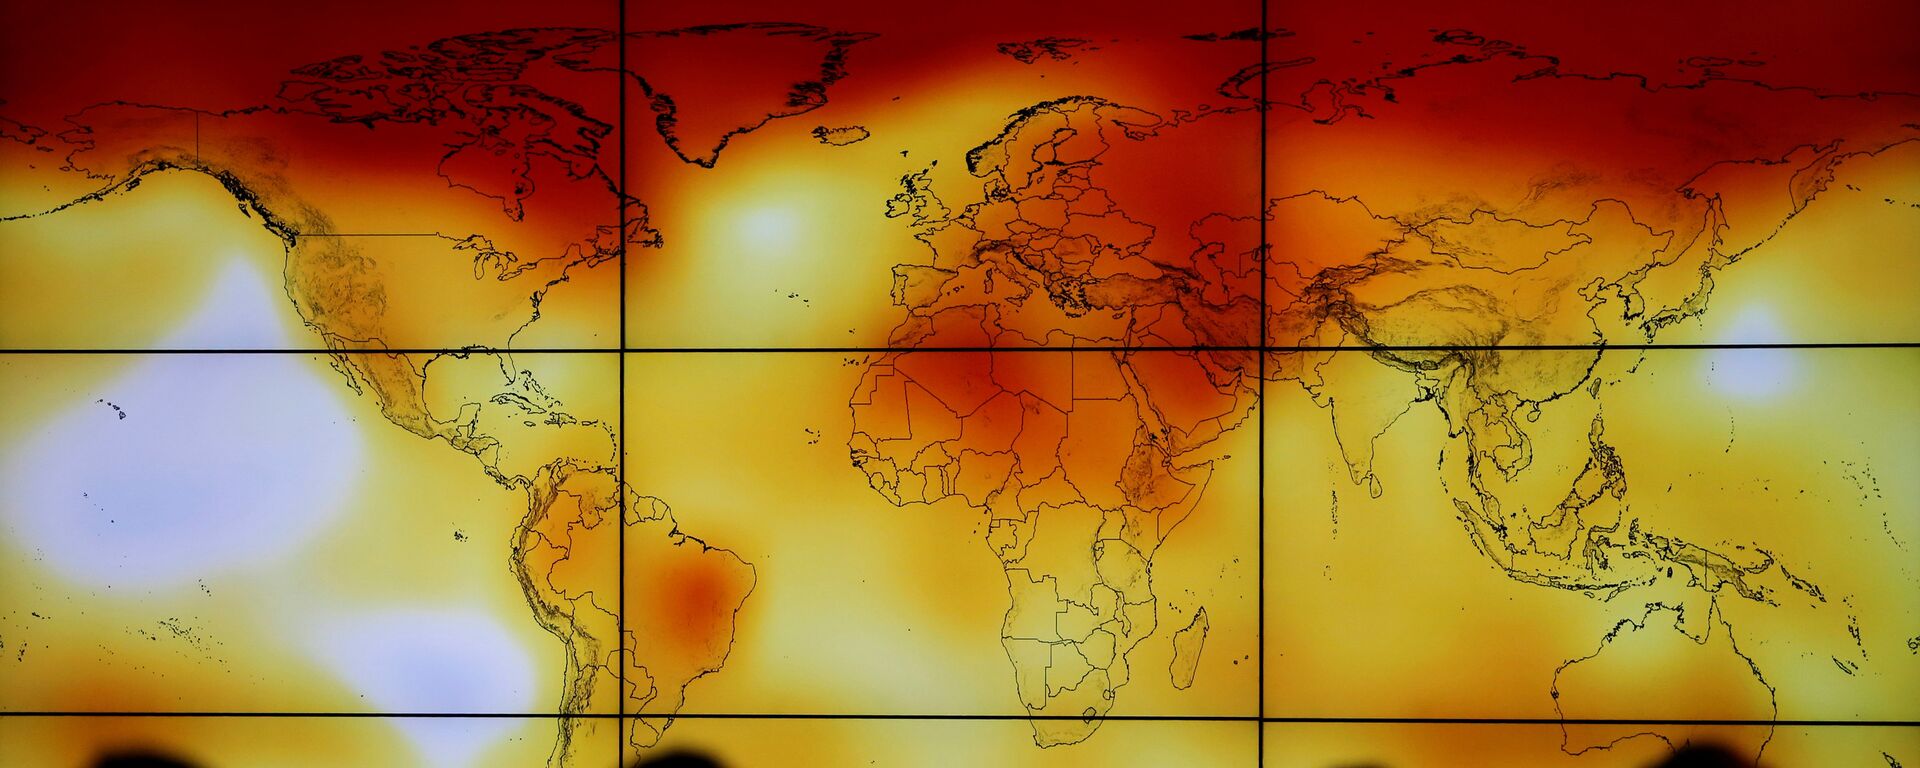 El cambio climático (imagen referencial) - Sputnik Mundo, 1920, 17.11.2020